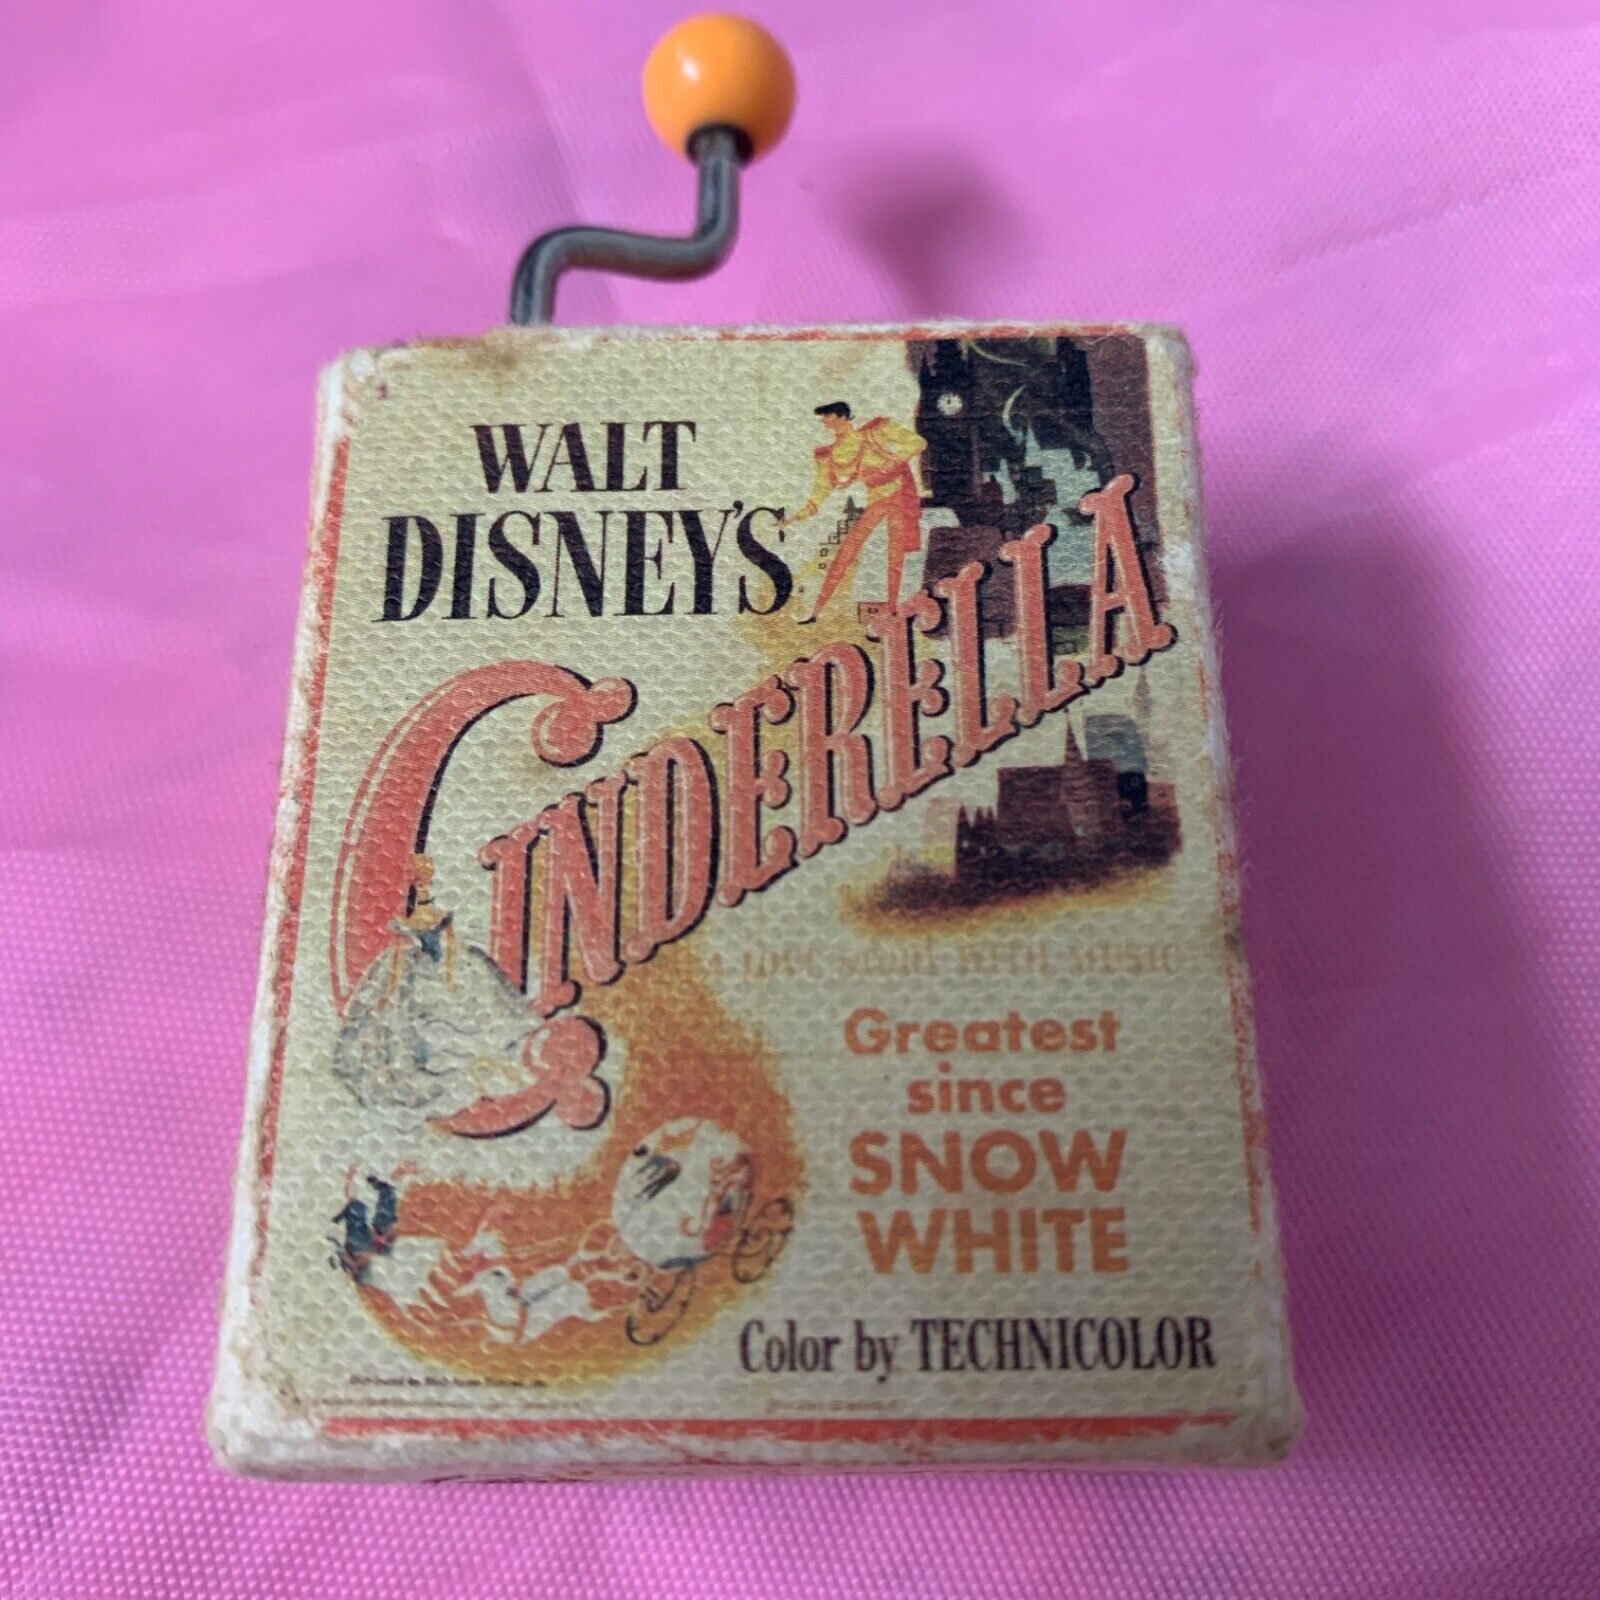 VINTAGE WALT DISNEY'S CINDERELLA Mini Music Box Color By Technicolor 1948